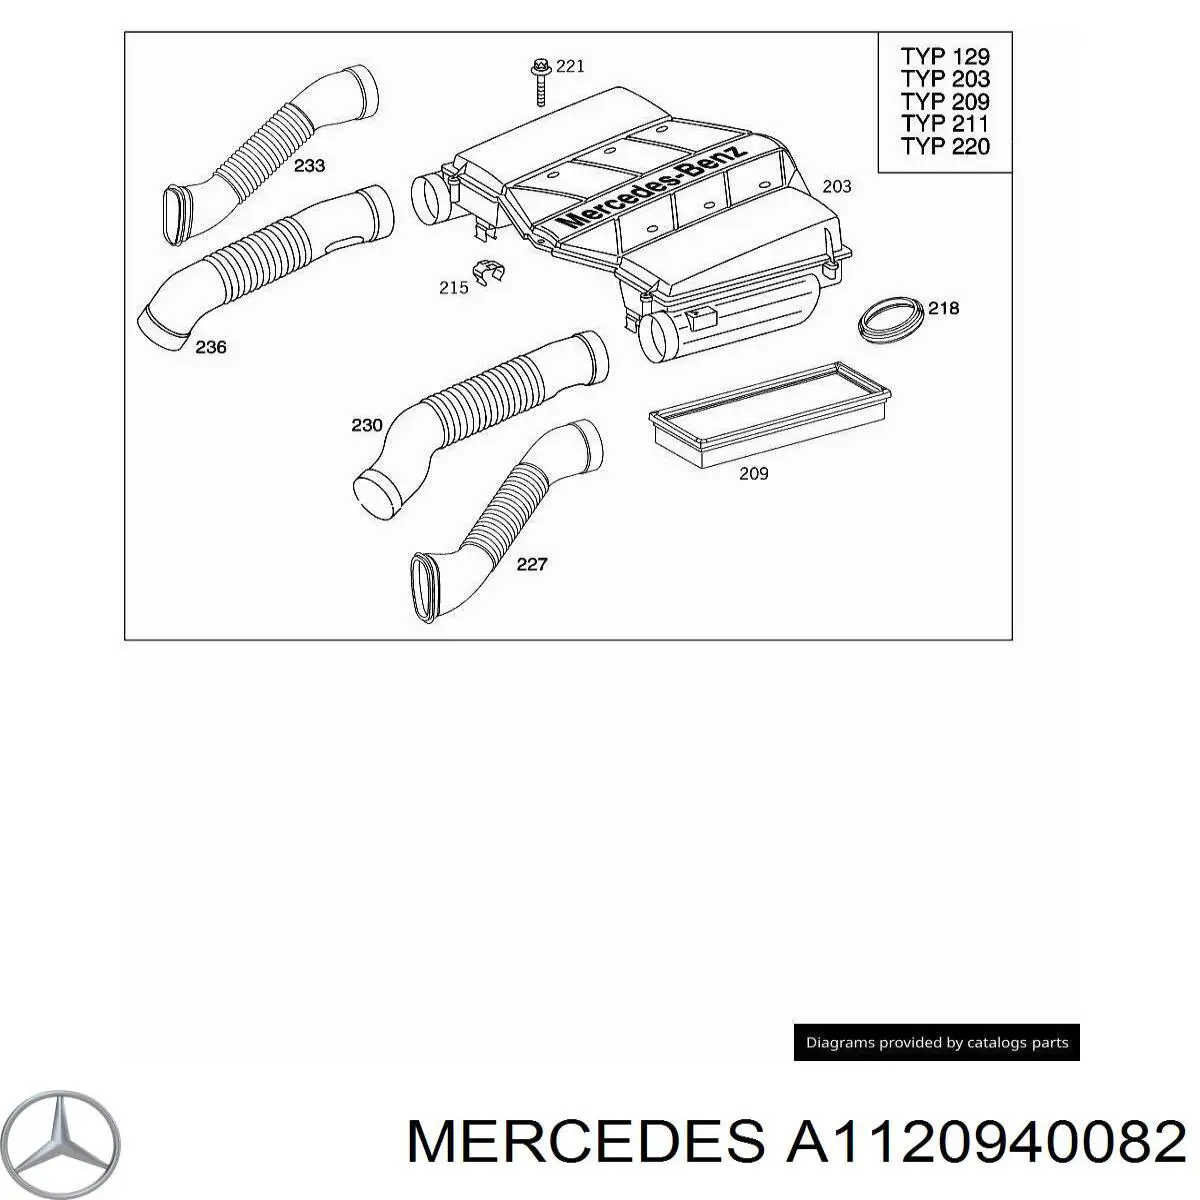 A1120940082 Mercedes воздухозаборник воздушного фильтра